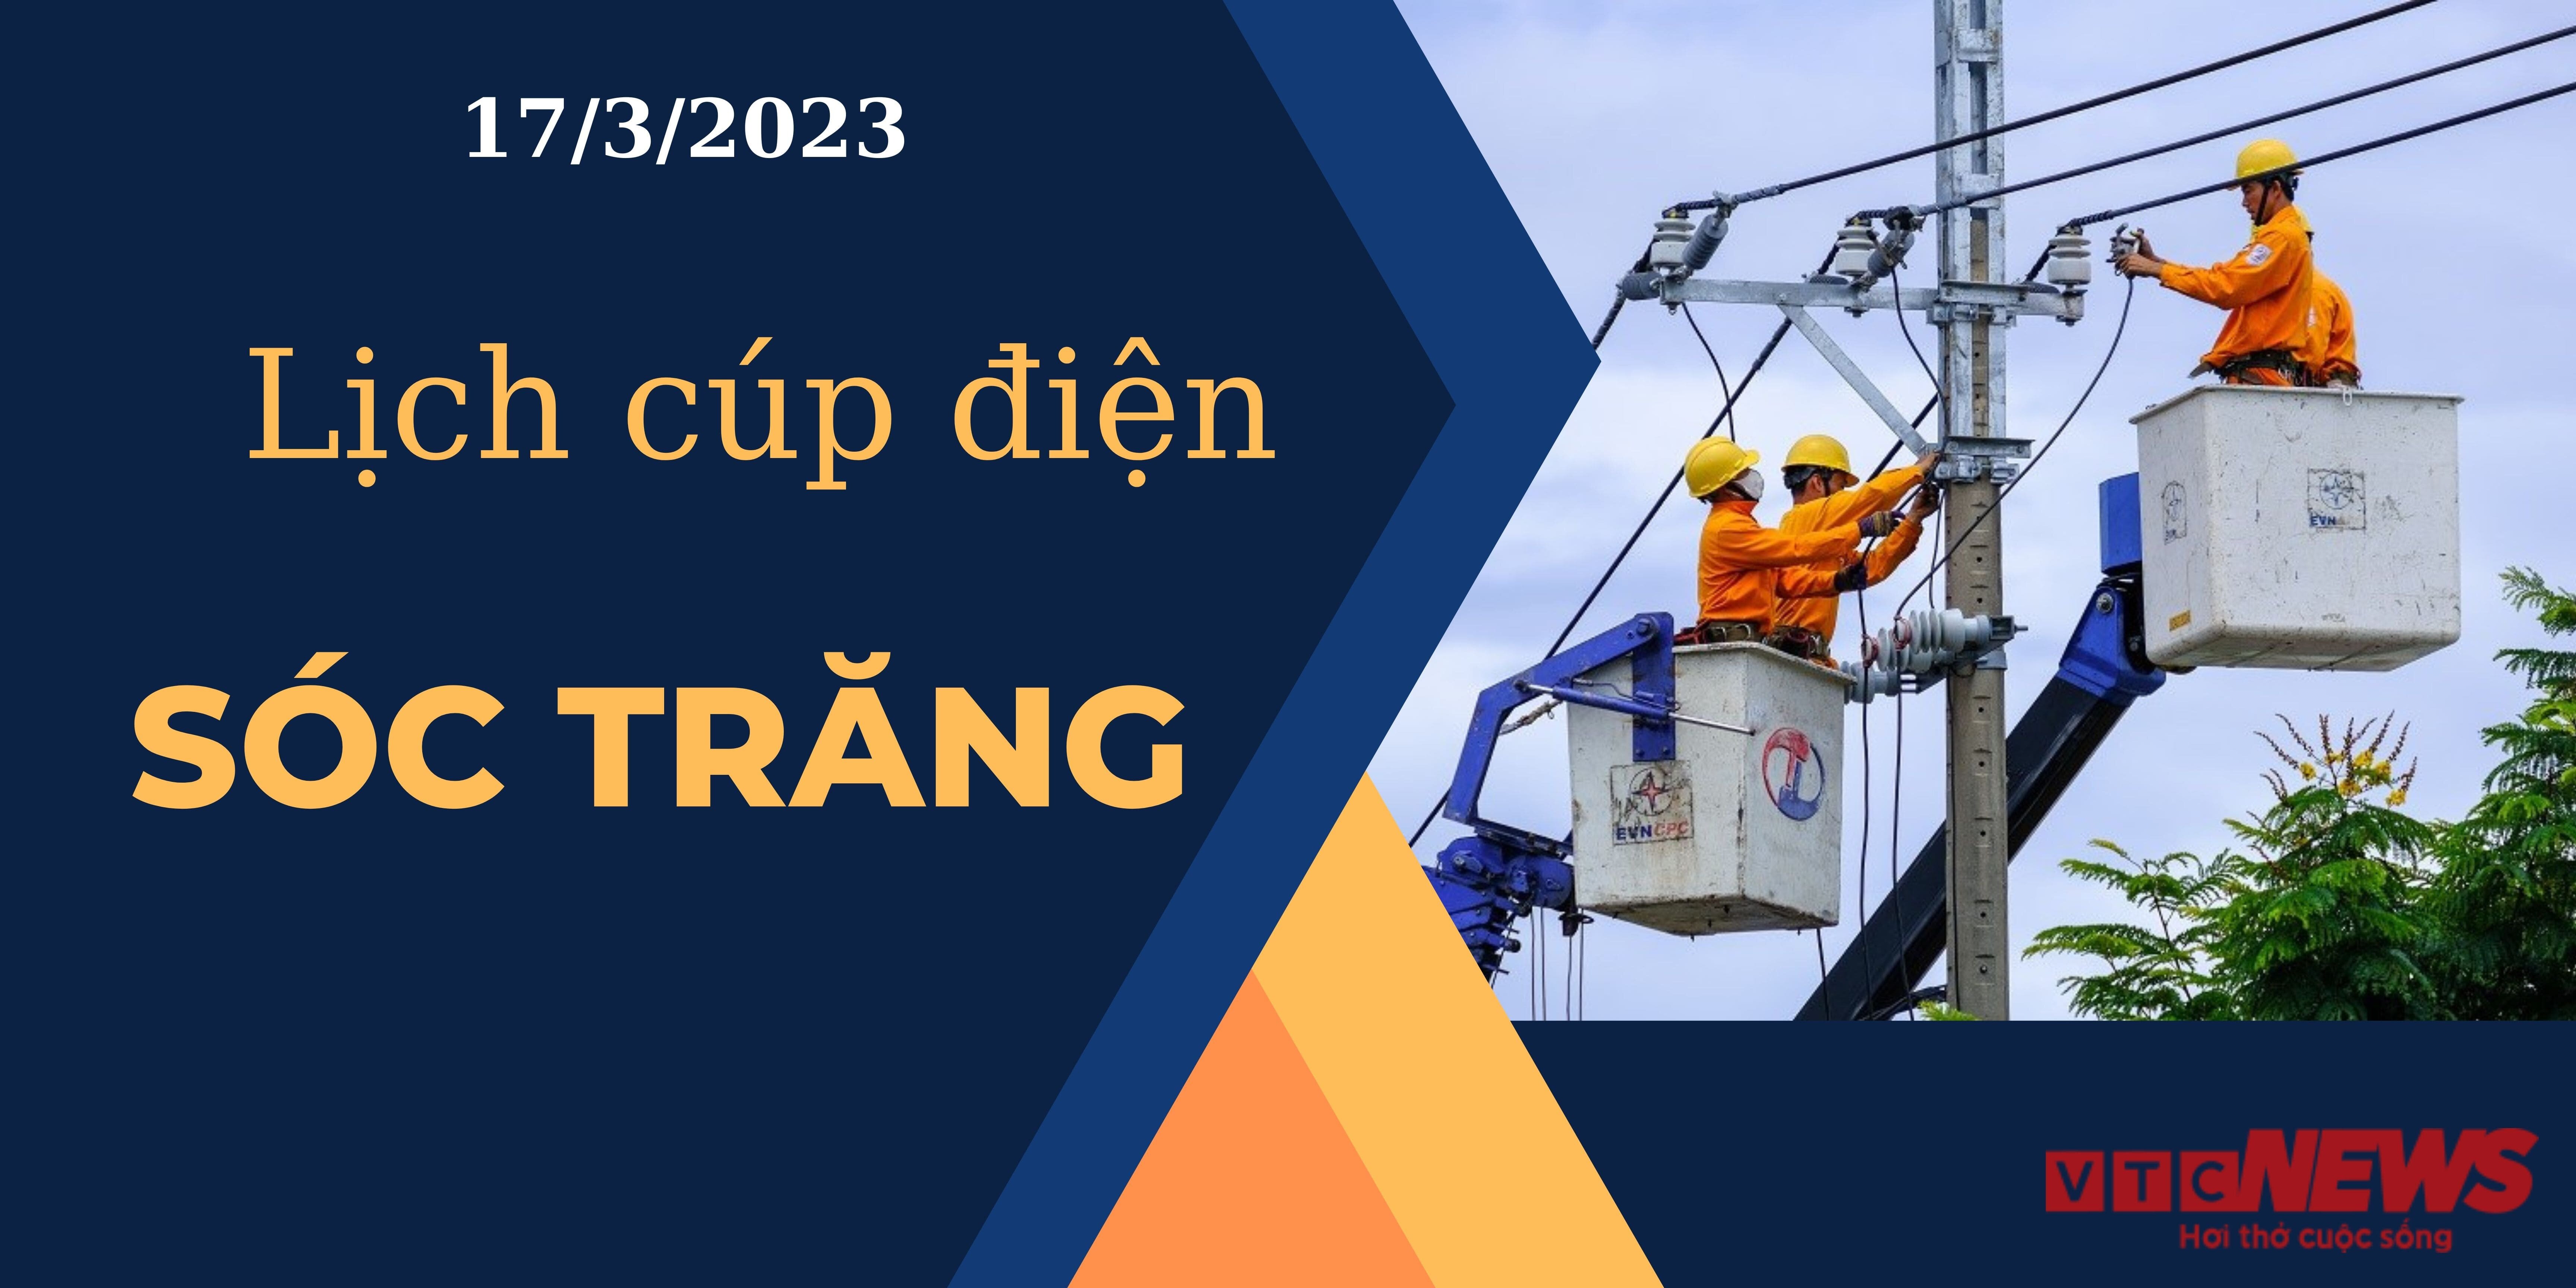 Lịch cúp điện hôm nay tại  Sóc Trăng ngày 17/3/2023 - 1